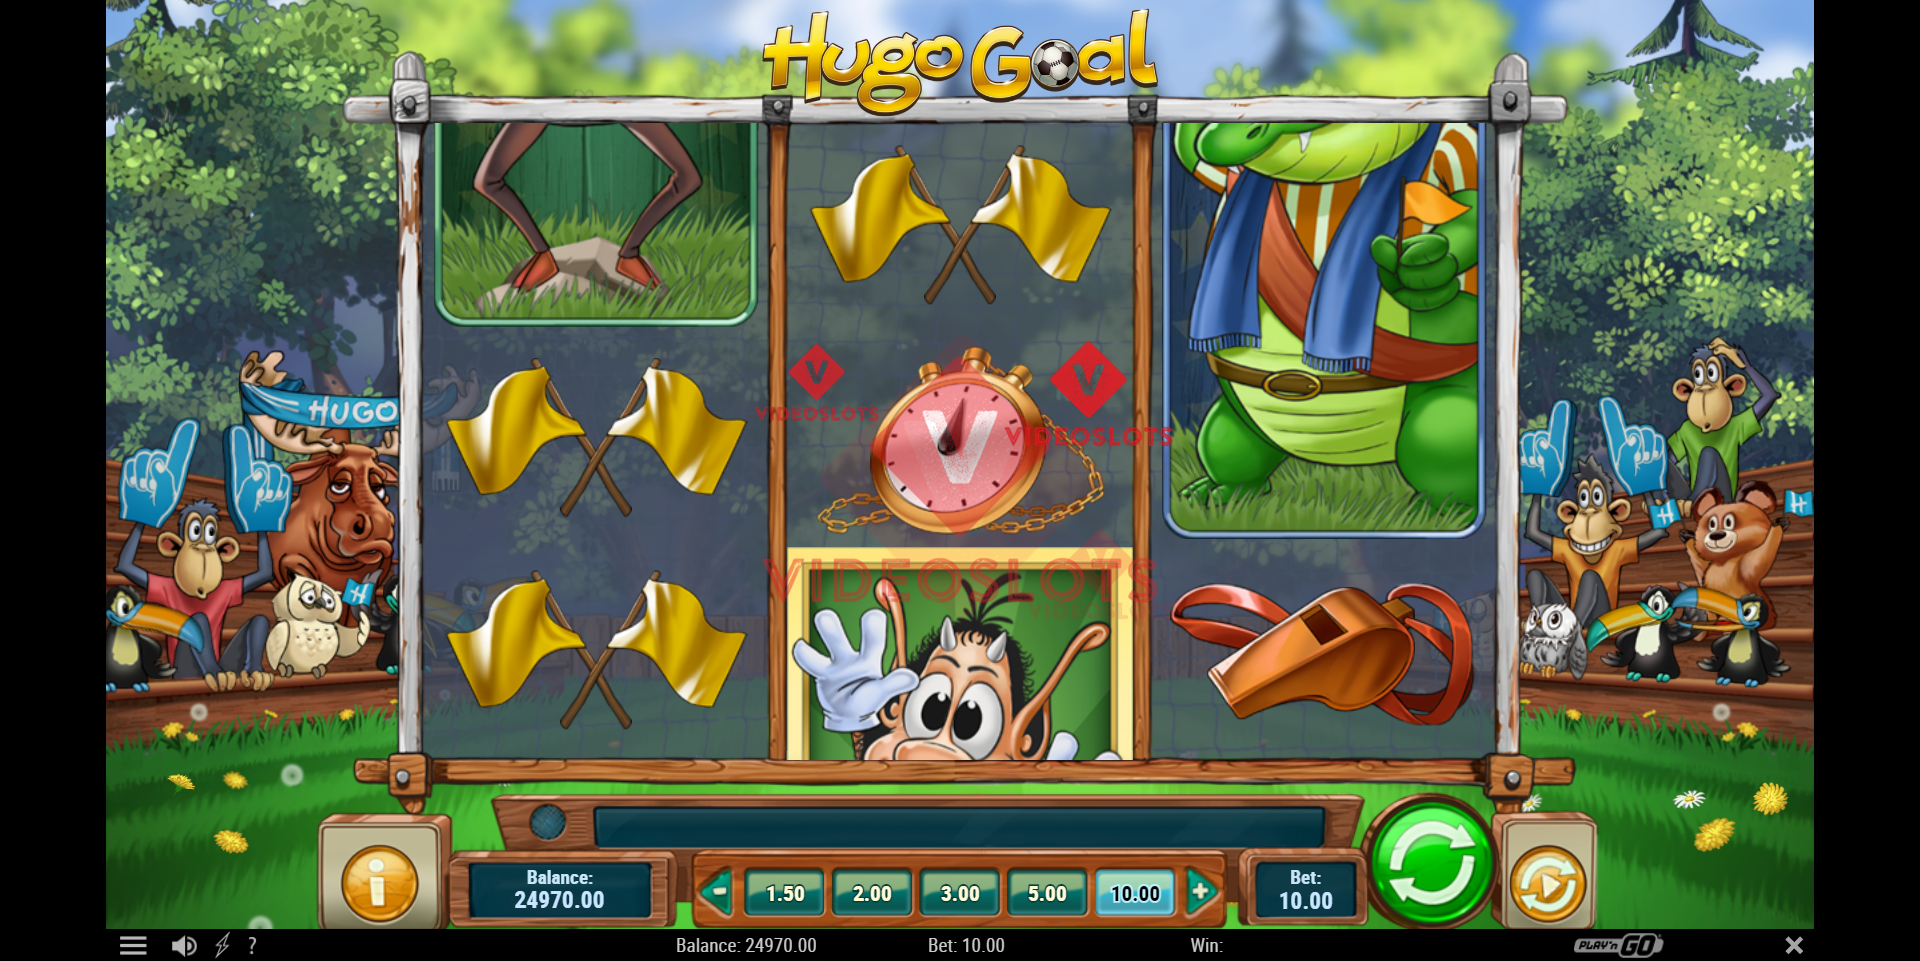 Base Game for Hugo Goal slot from Play'n Go